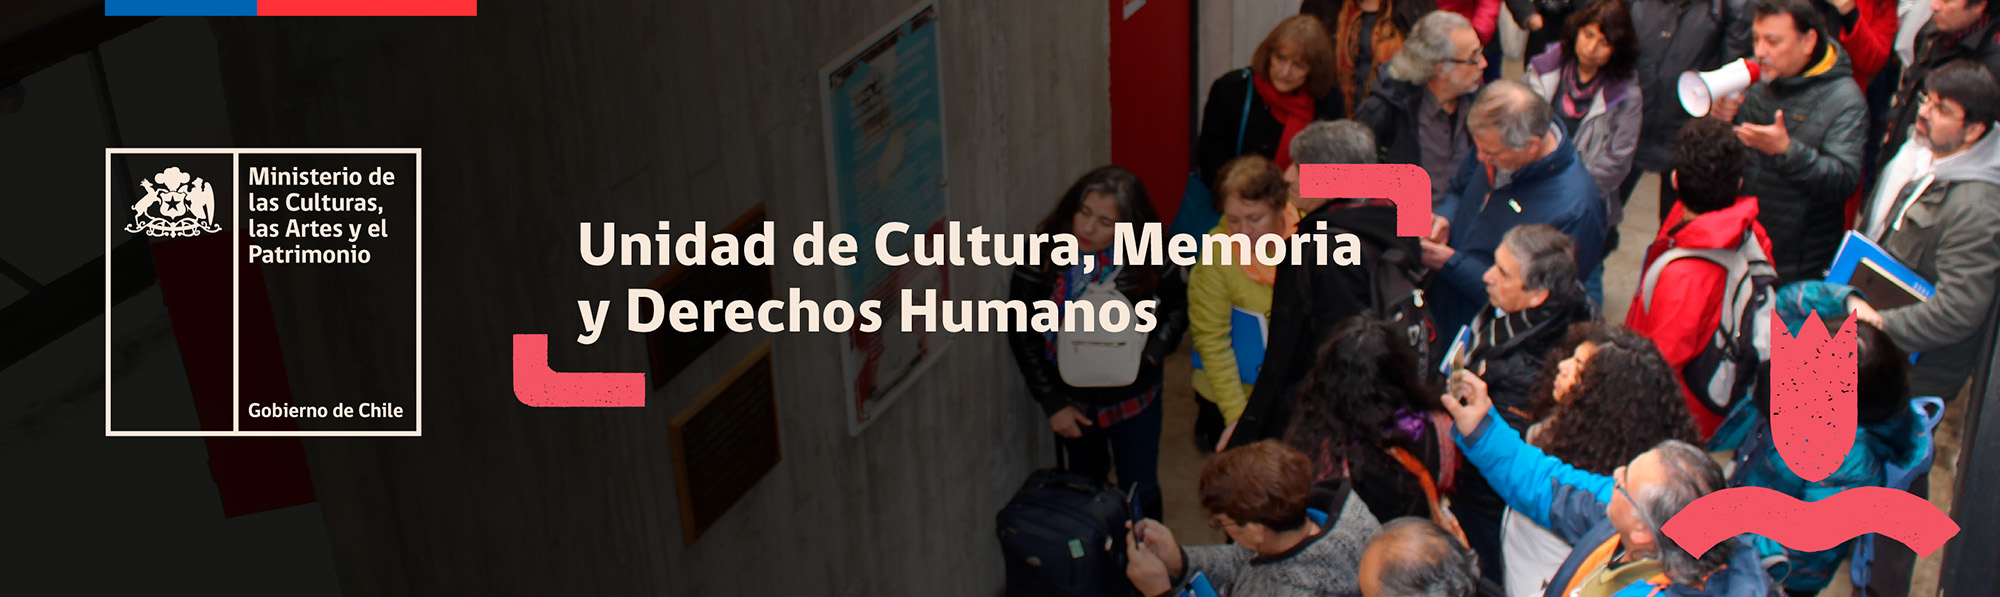 Unidad de cultura, memoria y derechos humanos